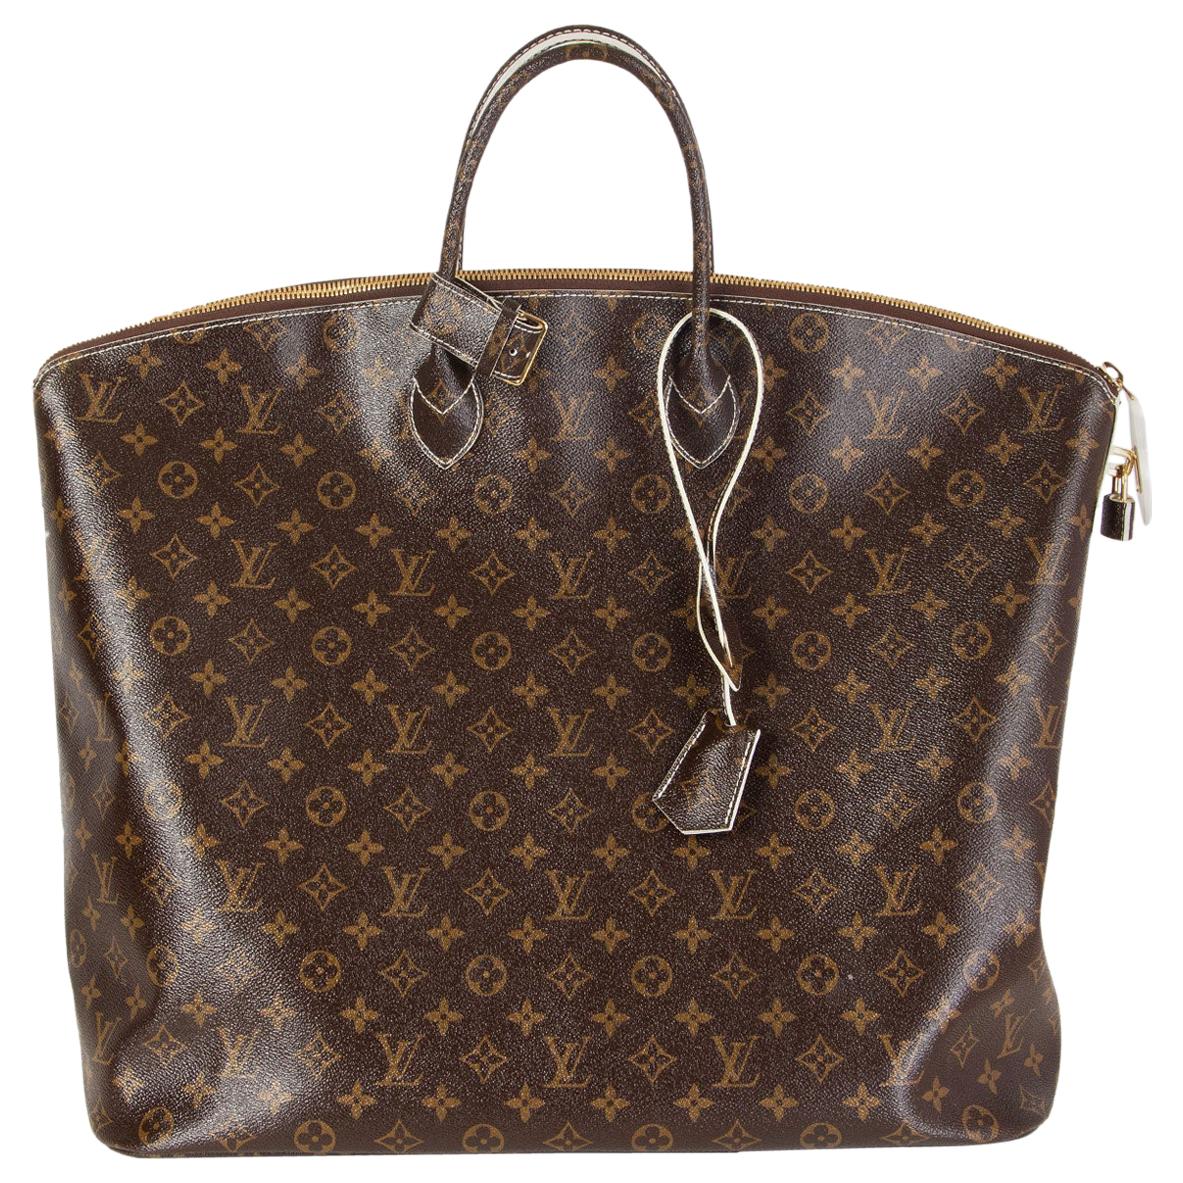 Olav cloth bag Louis Vuitton Brown in Cloth - 31708731